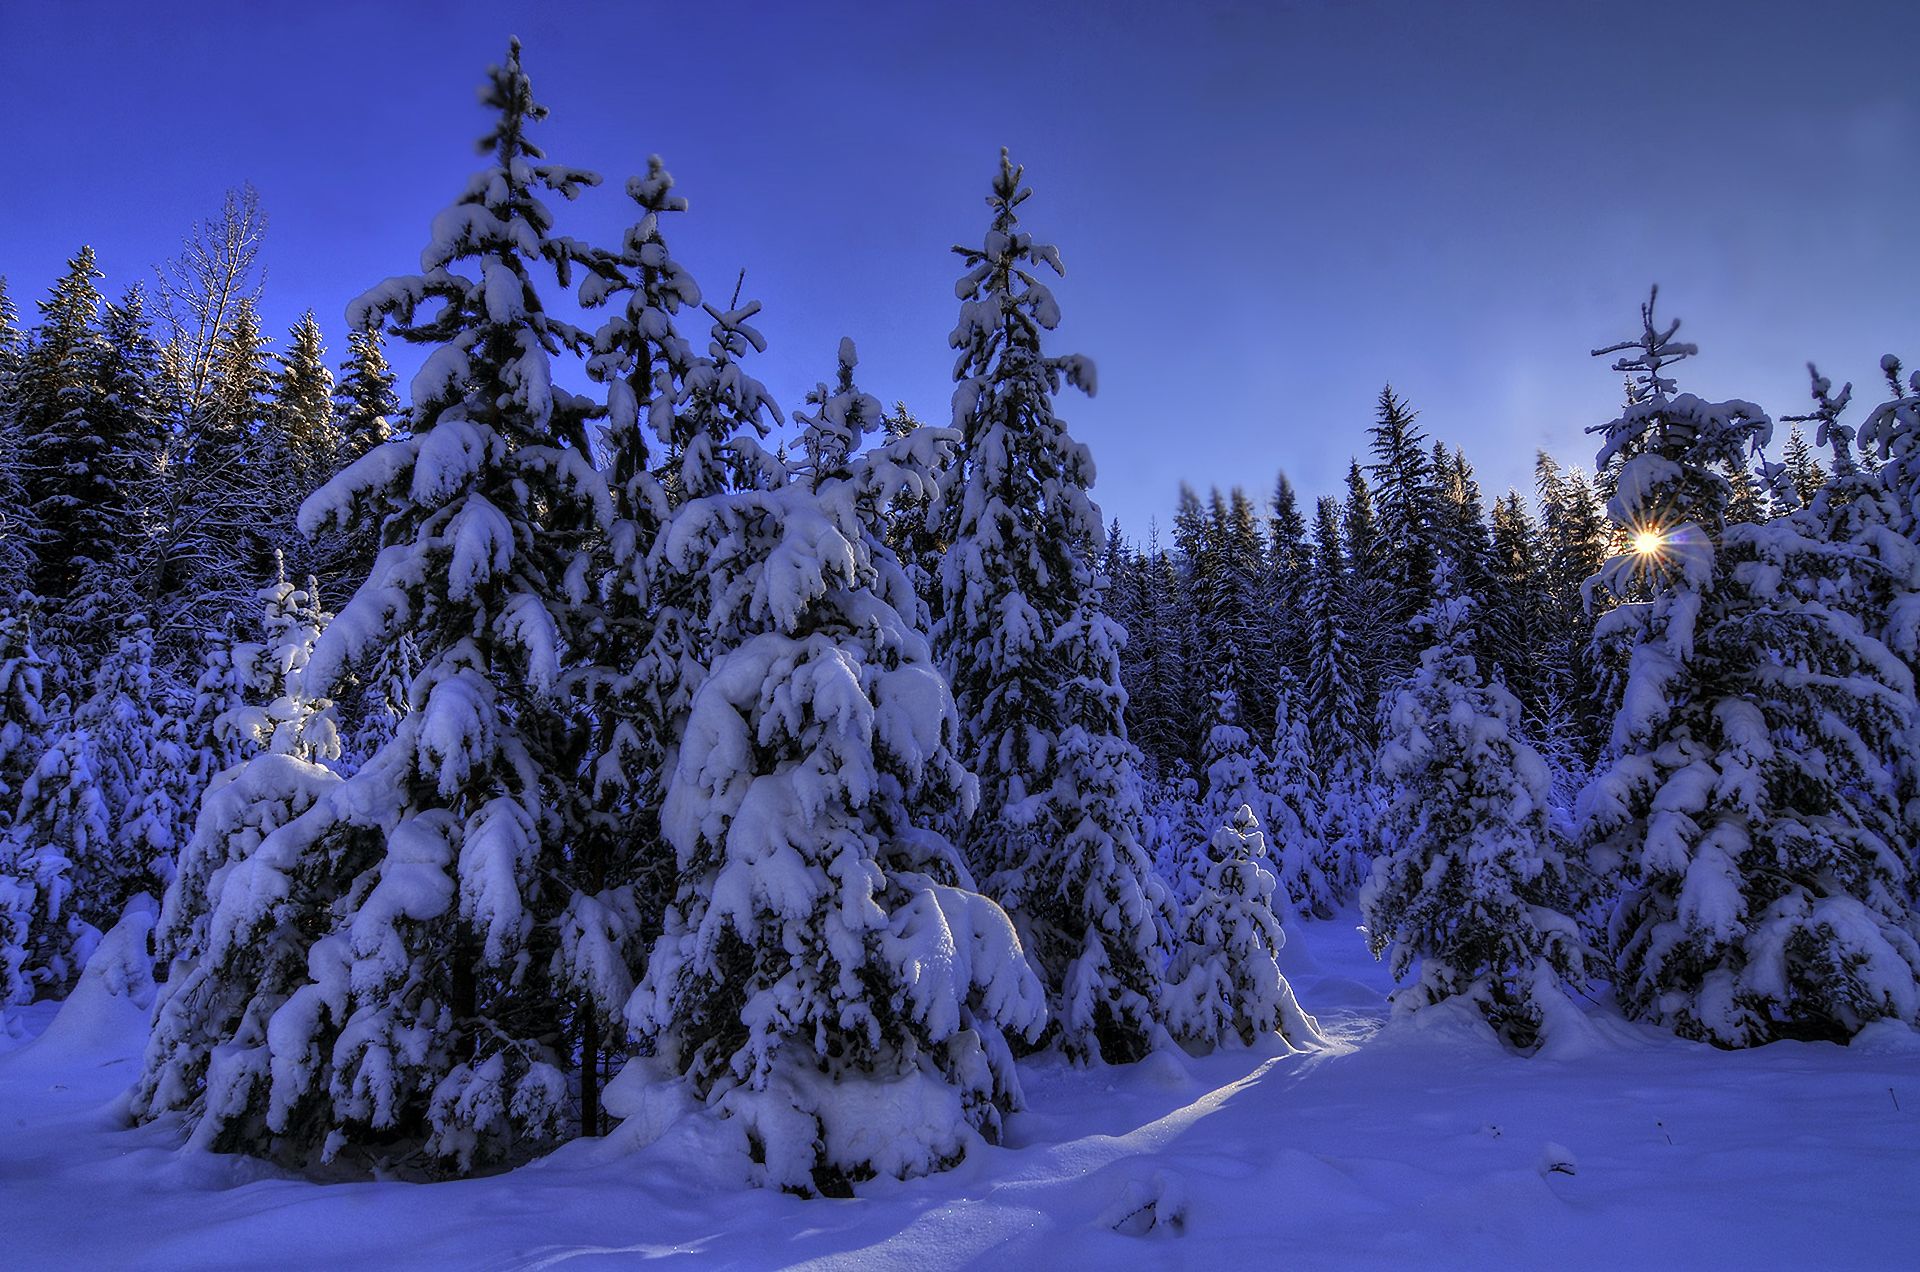 Скачать обои бесплатно Зима, Снег, Лес, Дерево, Сосна, Земля/природа картинка на рабочий стол ПК